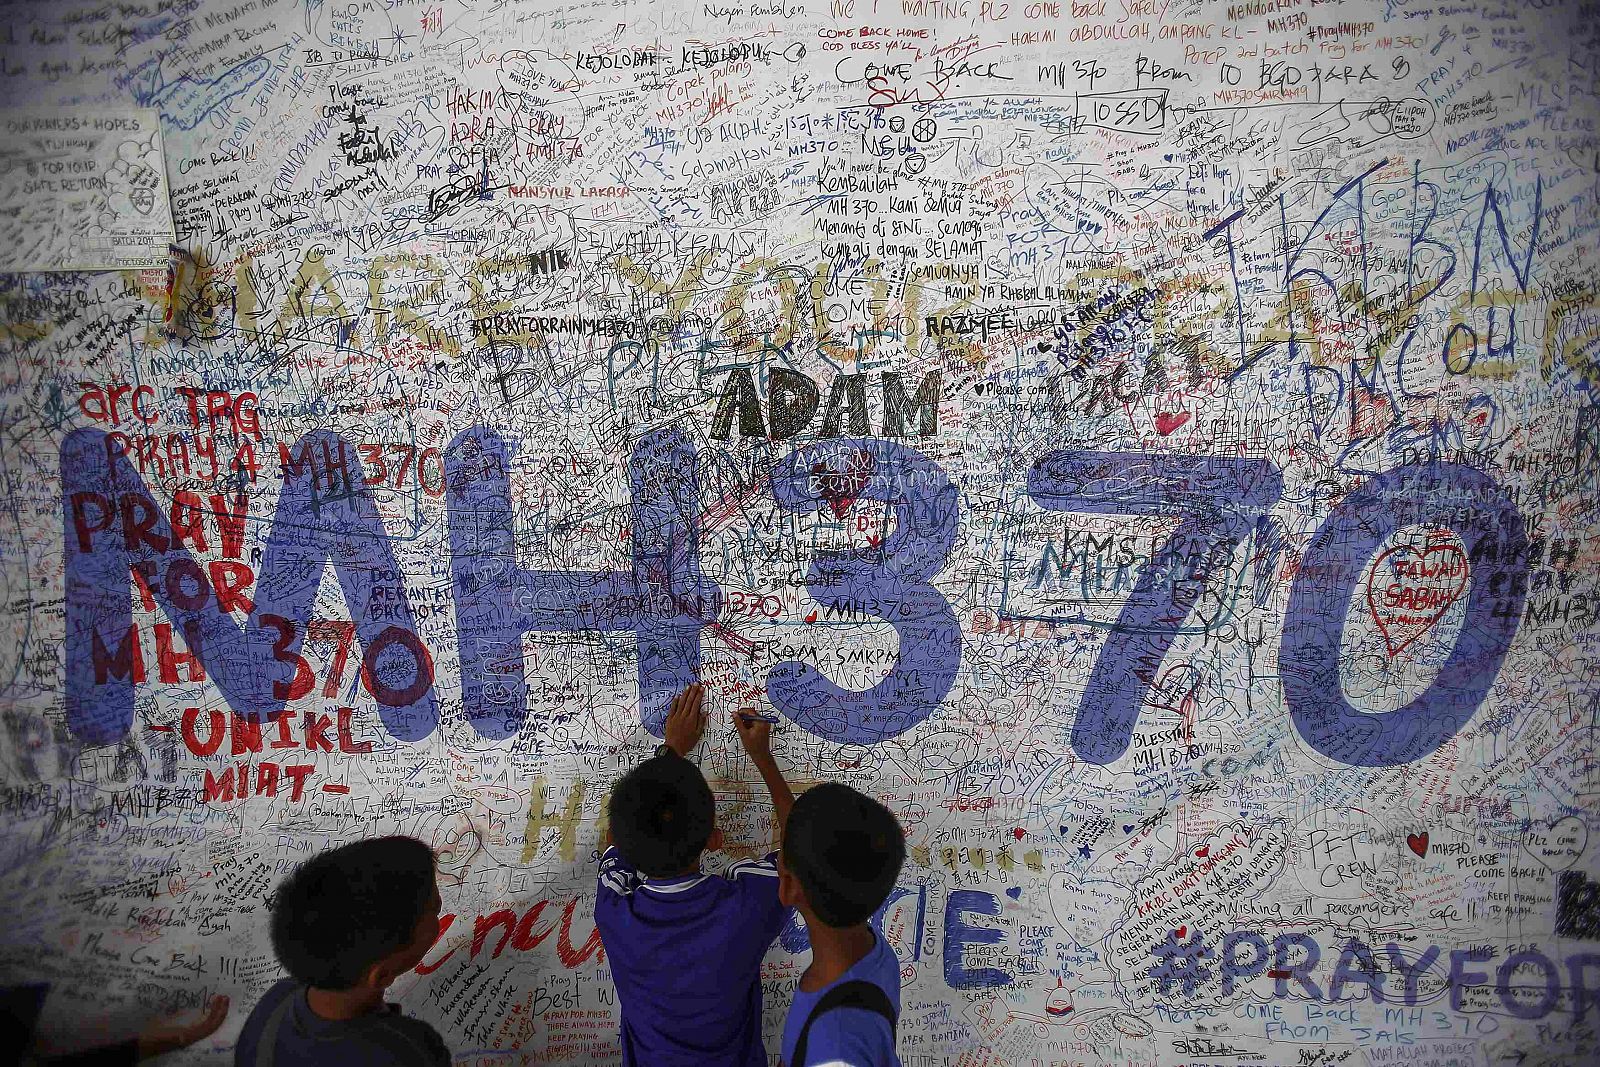 Niños escriben mensajes de esperanza para los pasajeros desaparecidos del vuelo MH370 en el aeropuerto de Kuala Lumpur.